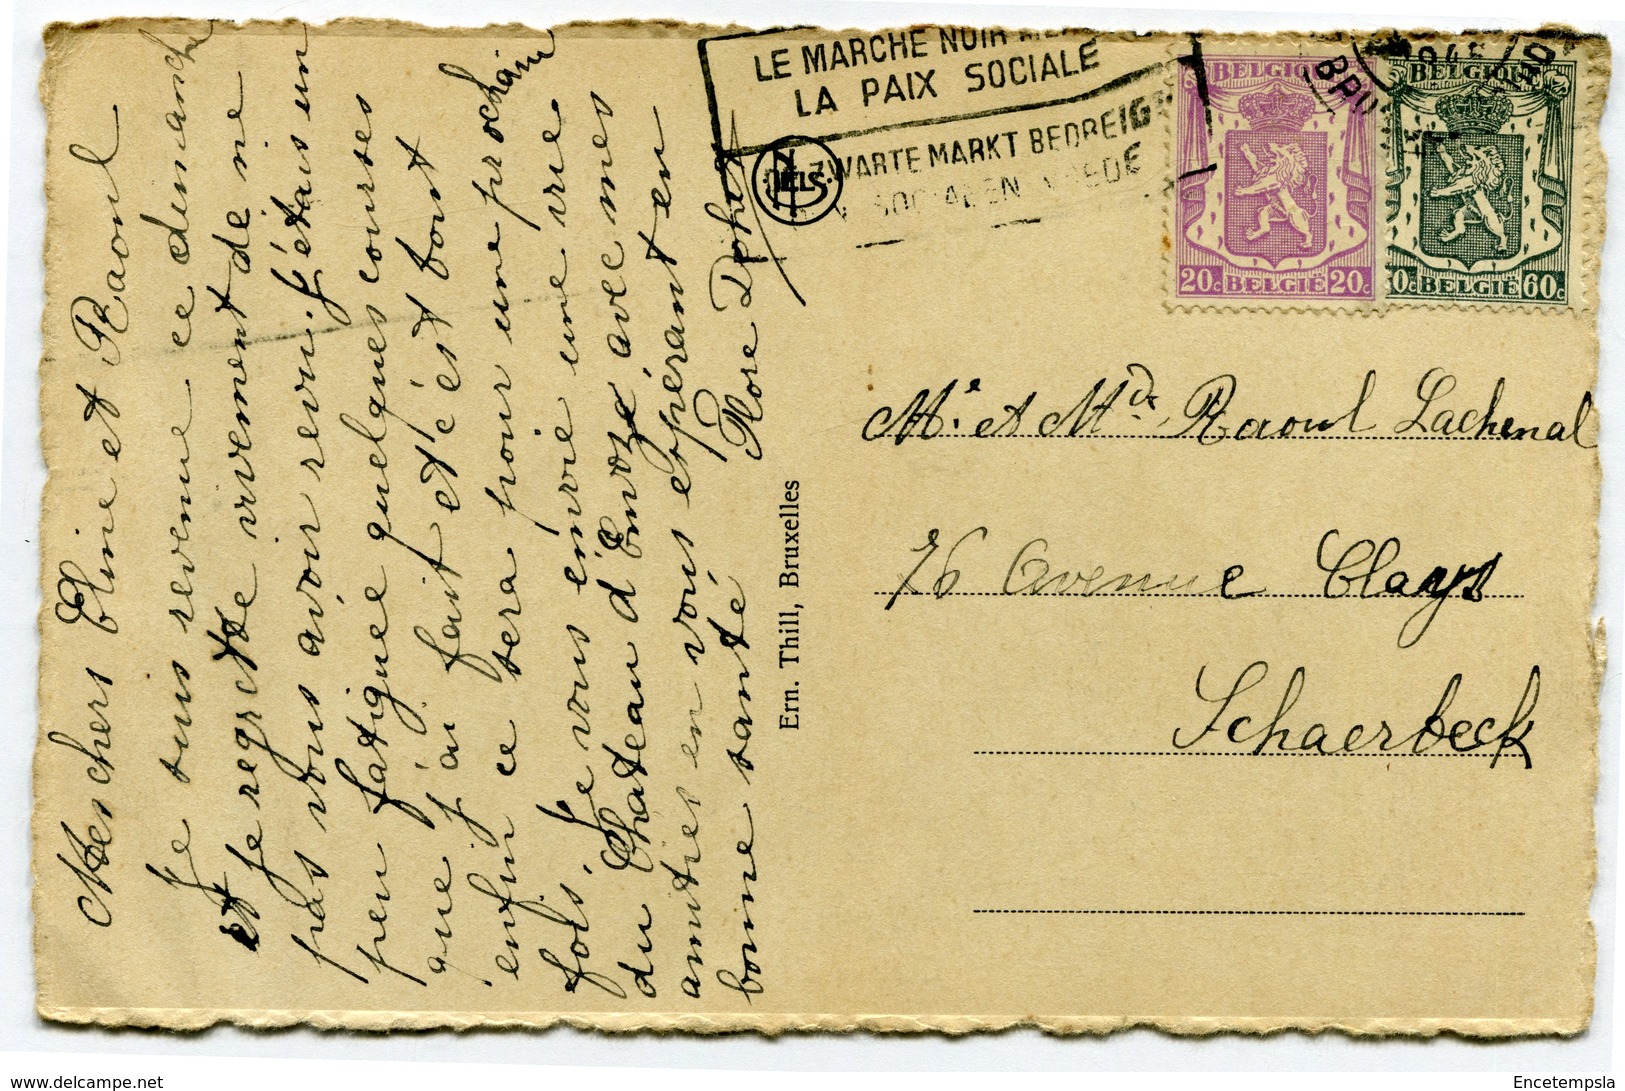 CPA - Carte Postale - Belgique - Couthuin - Château D'Envoz (CP2890) - Héron